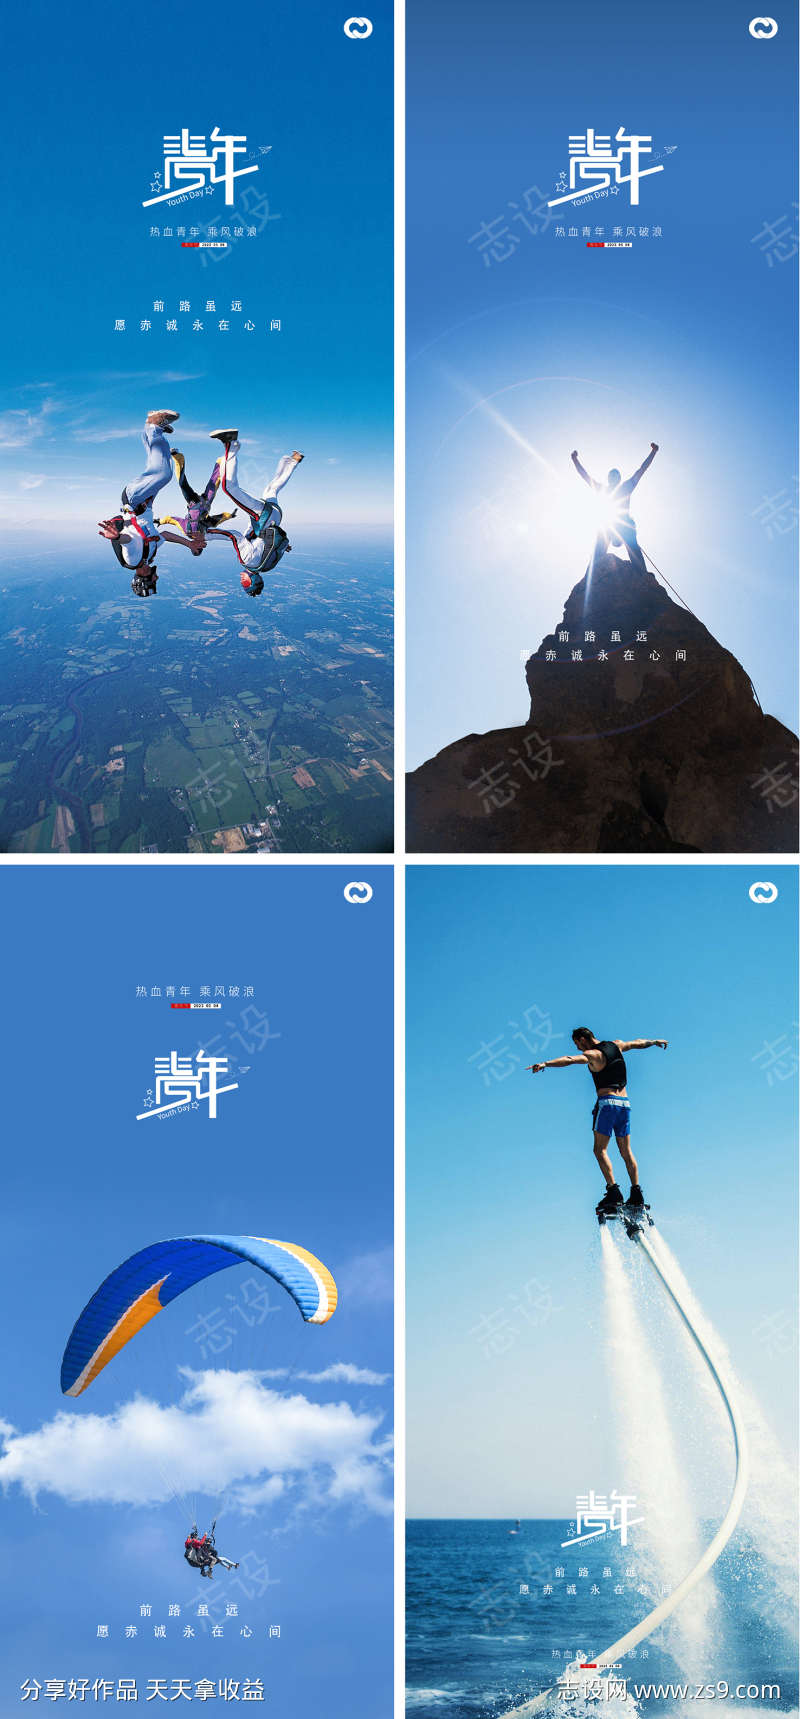 54青年节励志早安图阳光跳伞爬山海报